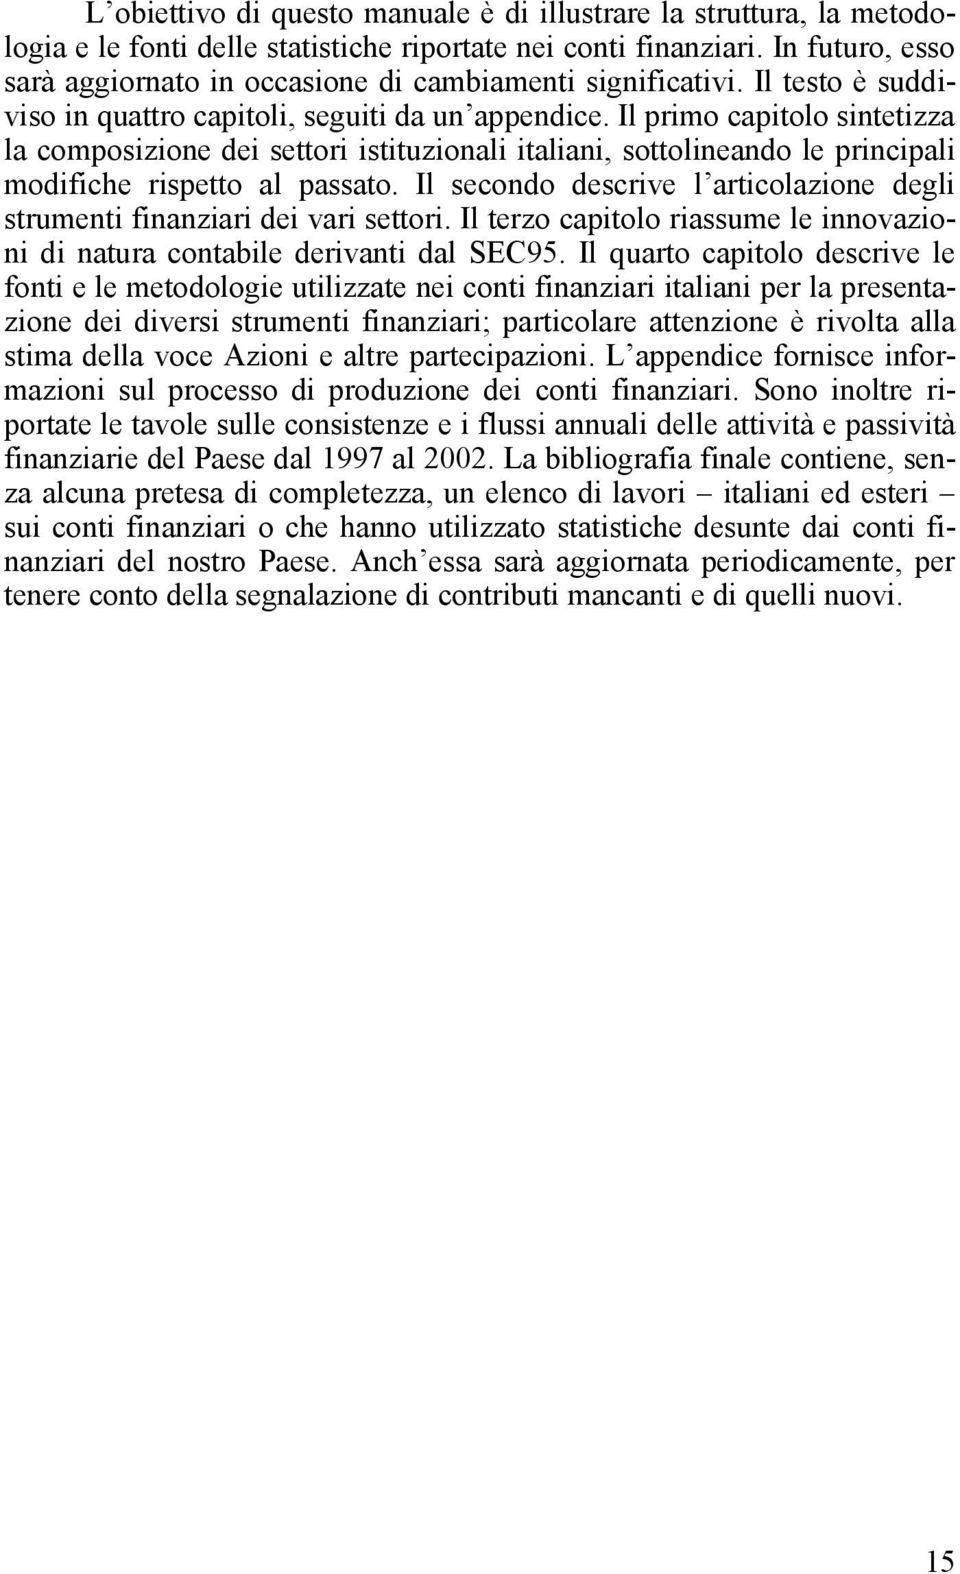 Il primo capitolo sintetizza la composizione dei settori istituzionali italiani, sottolineando le principali modifiche rispetto al passato.